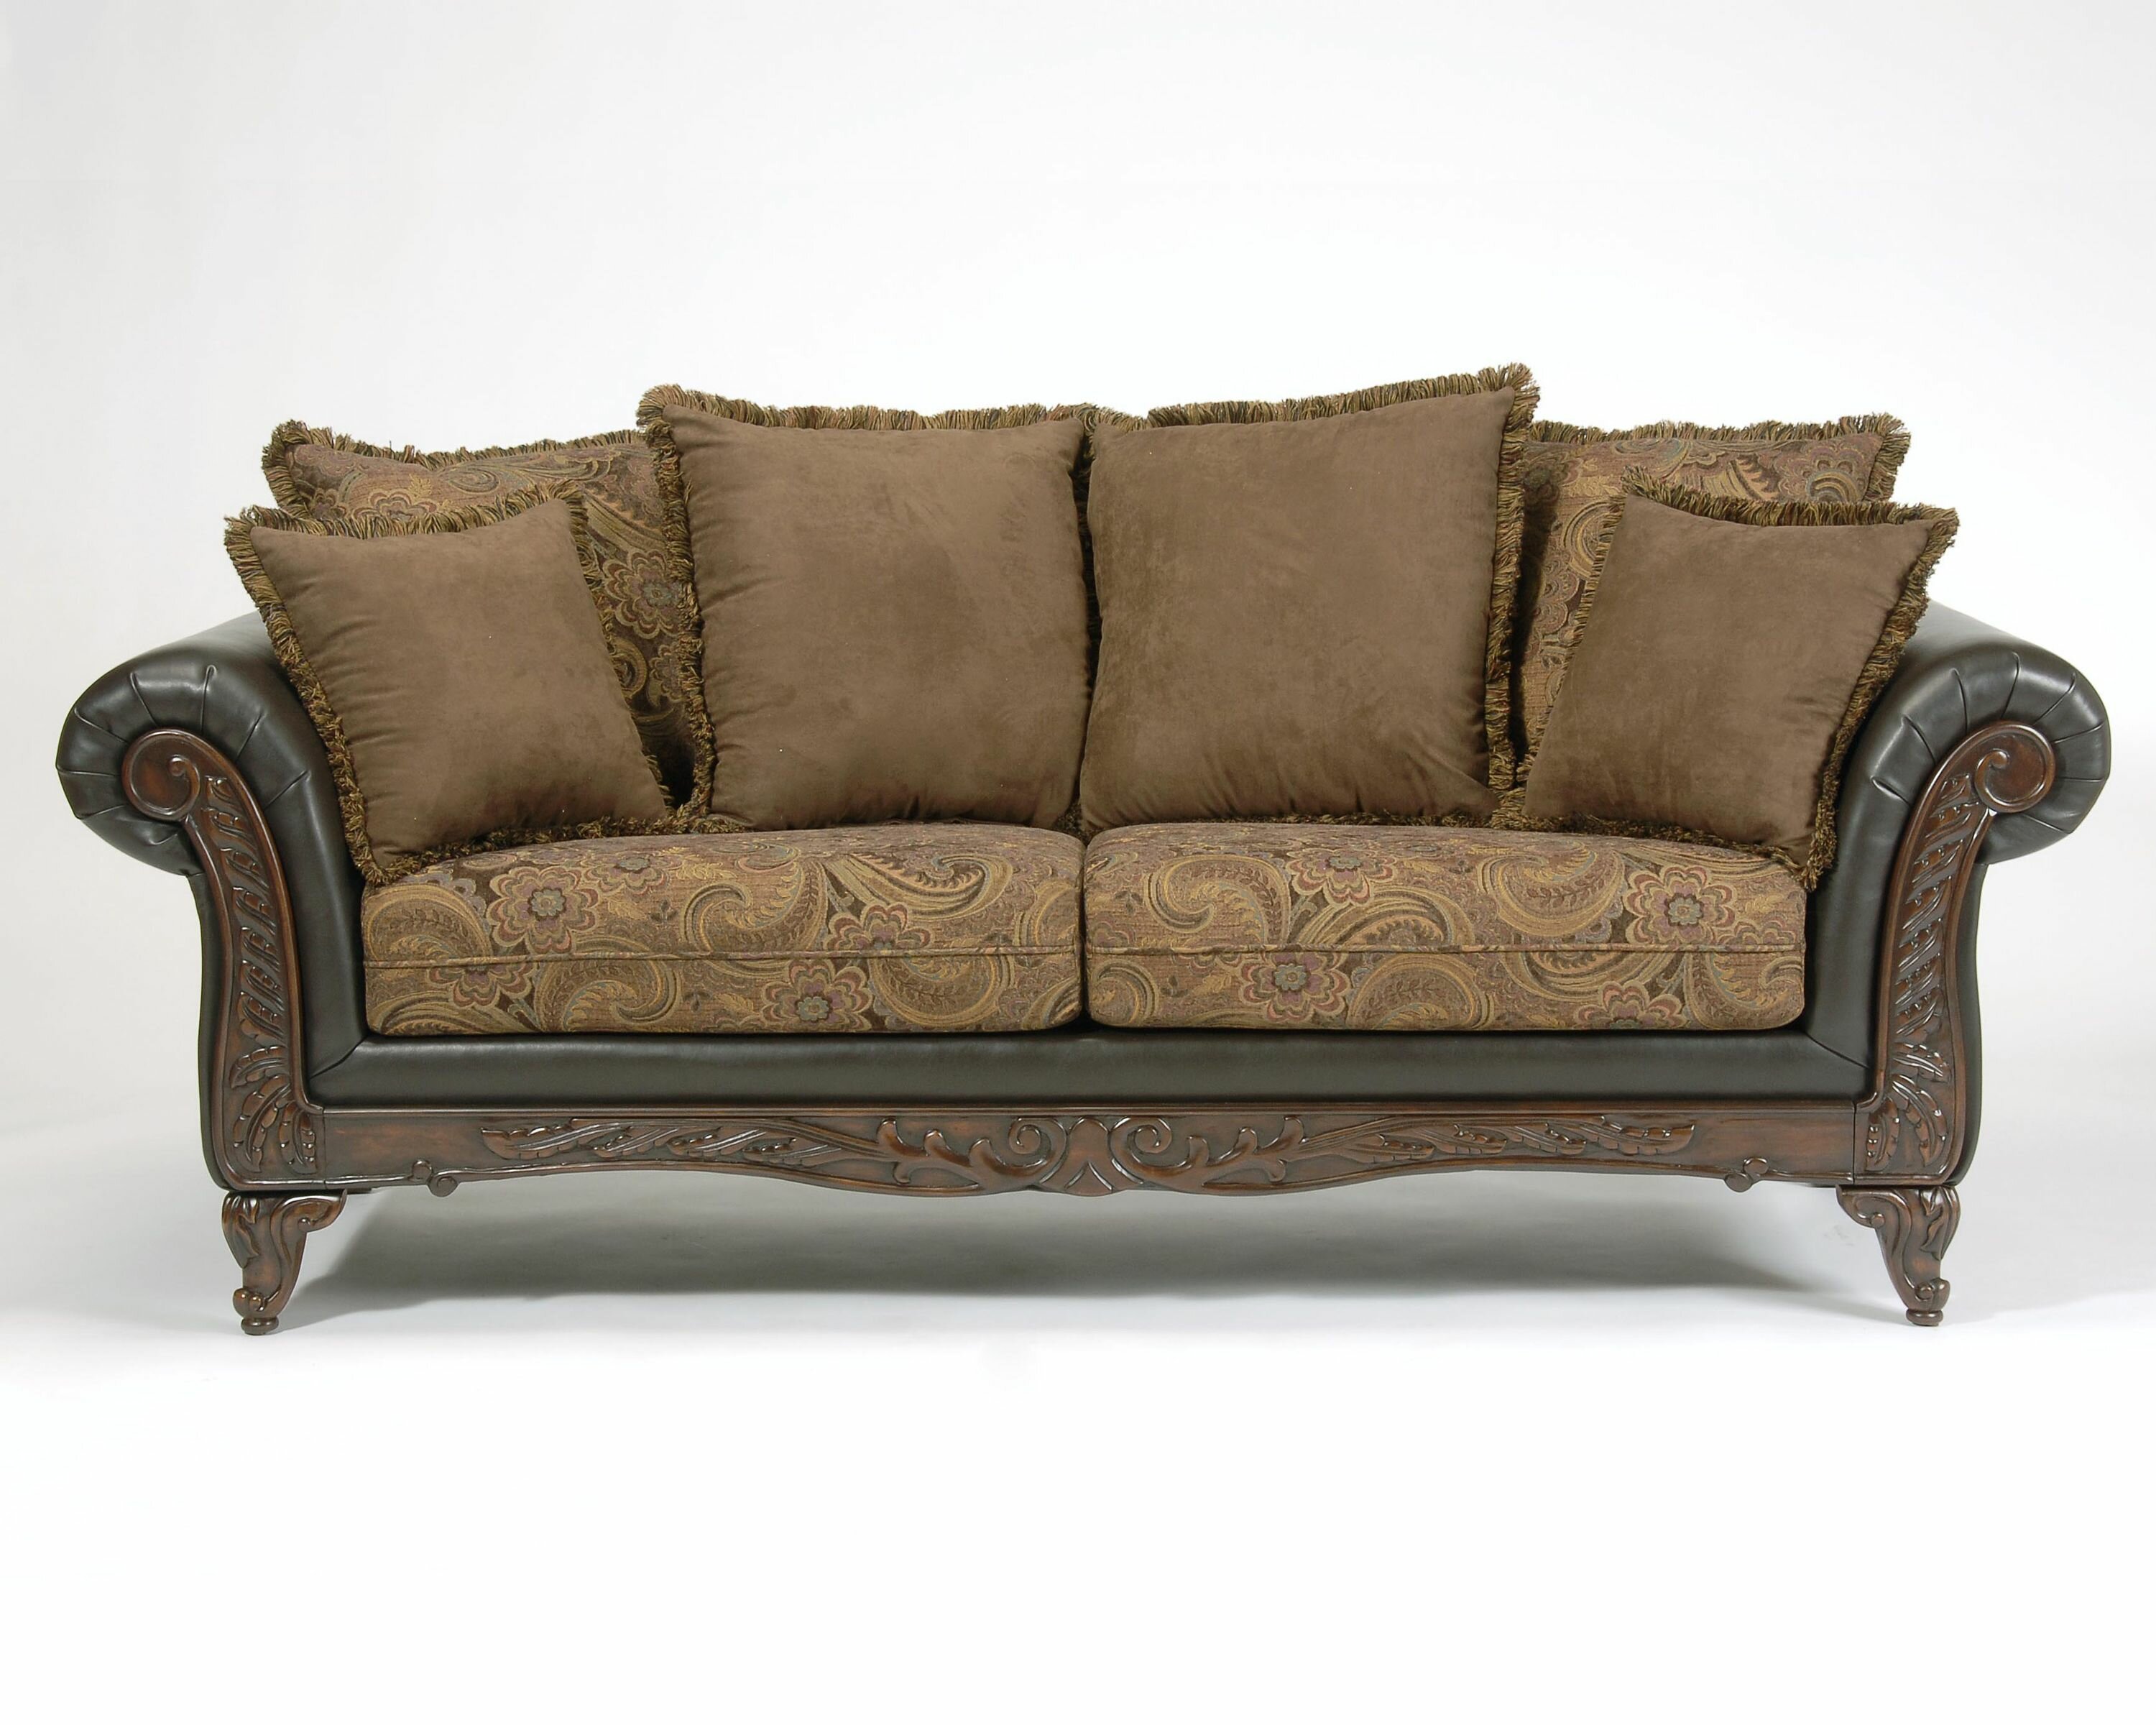 serta living room furniture manufacturer website